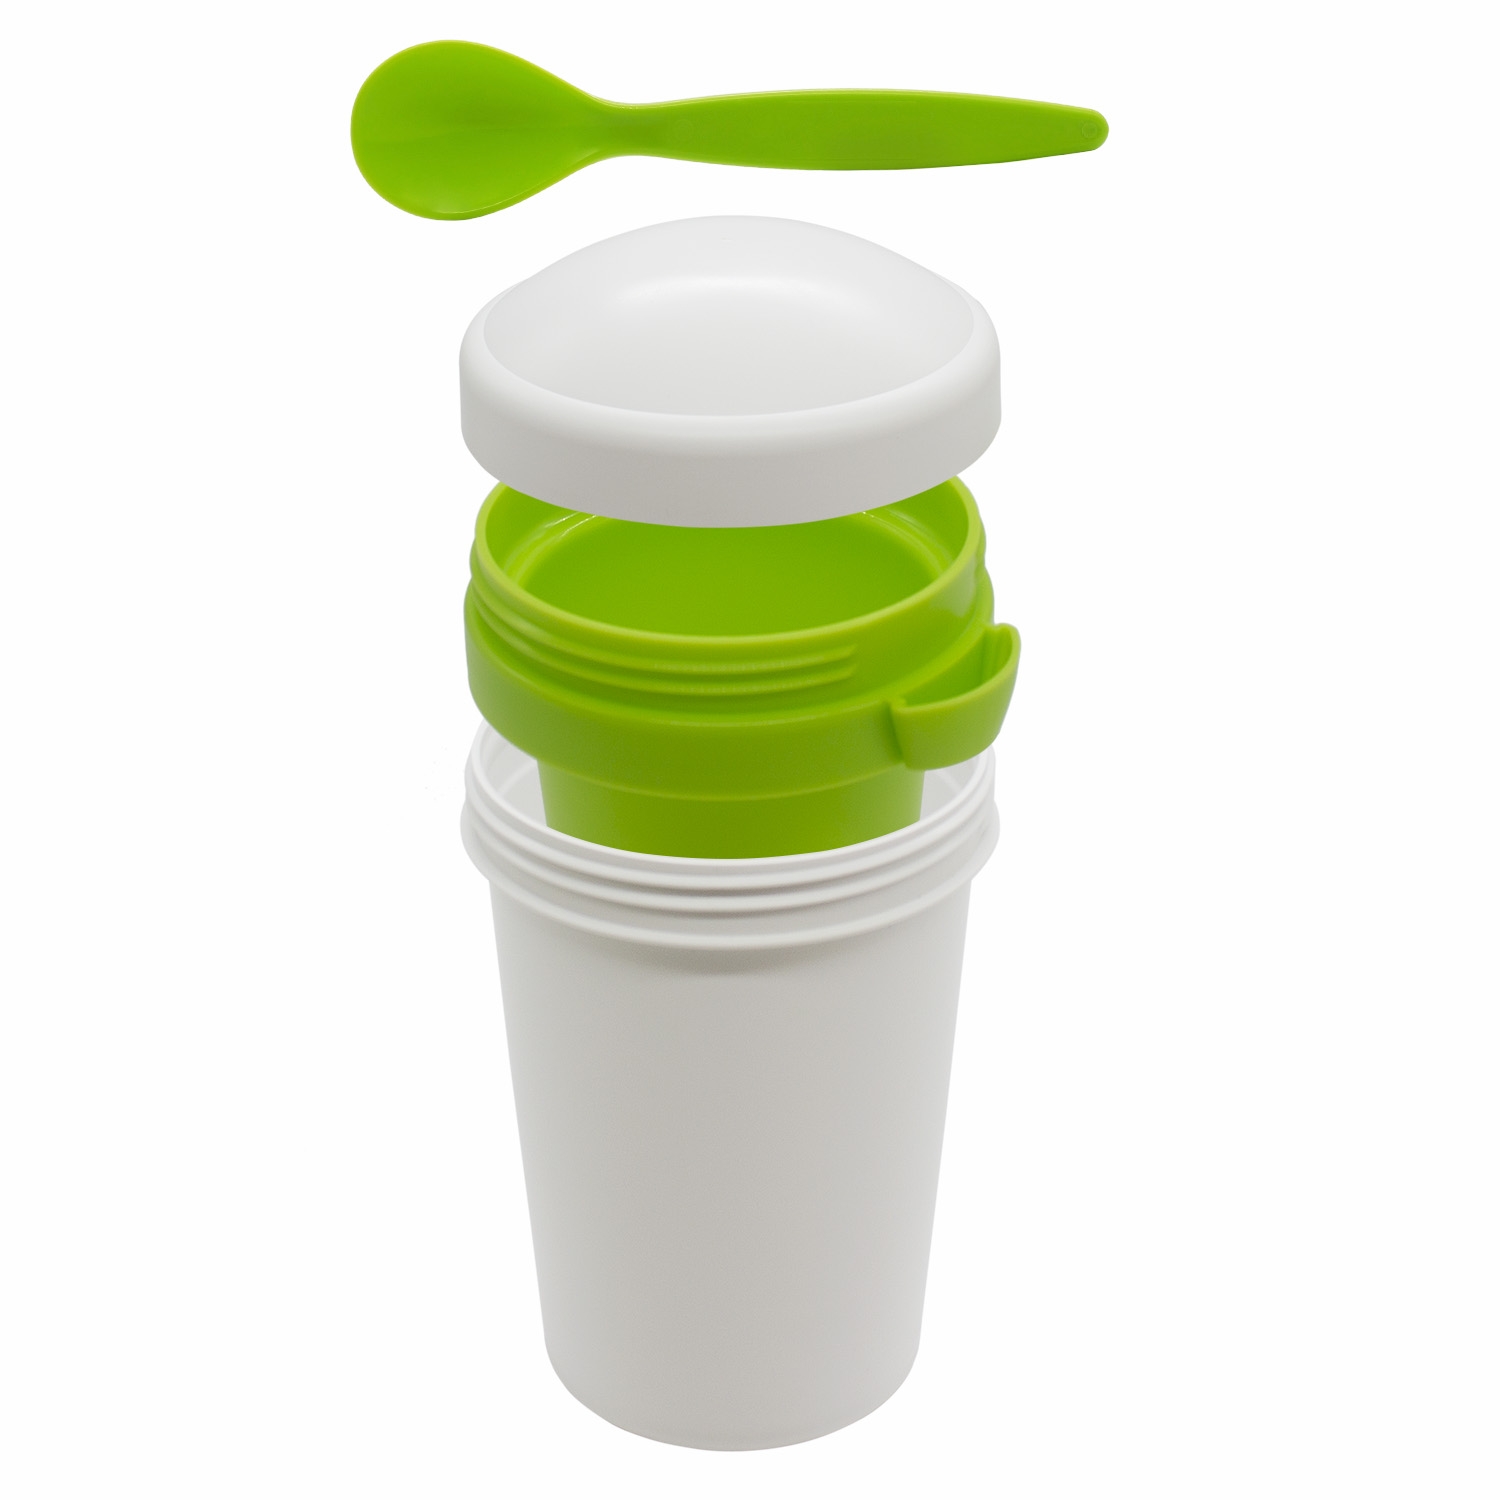 Ланч-бокс Cereal to go Green Line с ложкой (салатовый), зеленый, 65% сахарного тростника,35% пластик